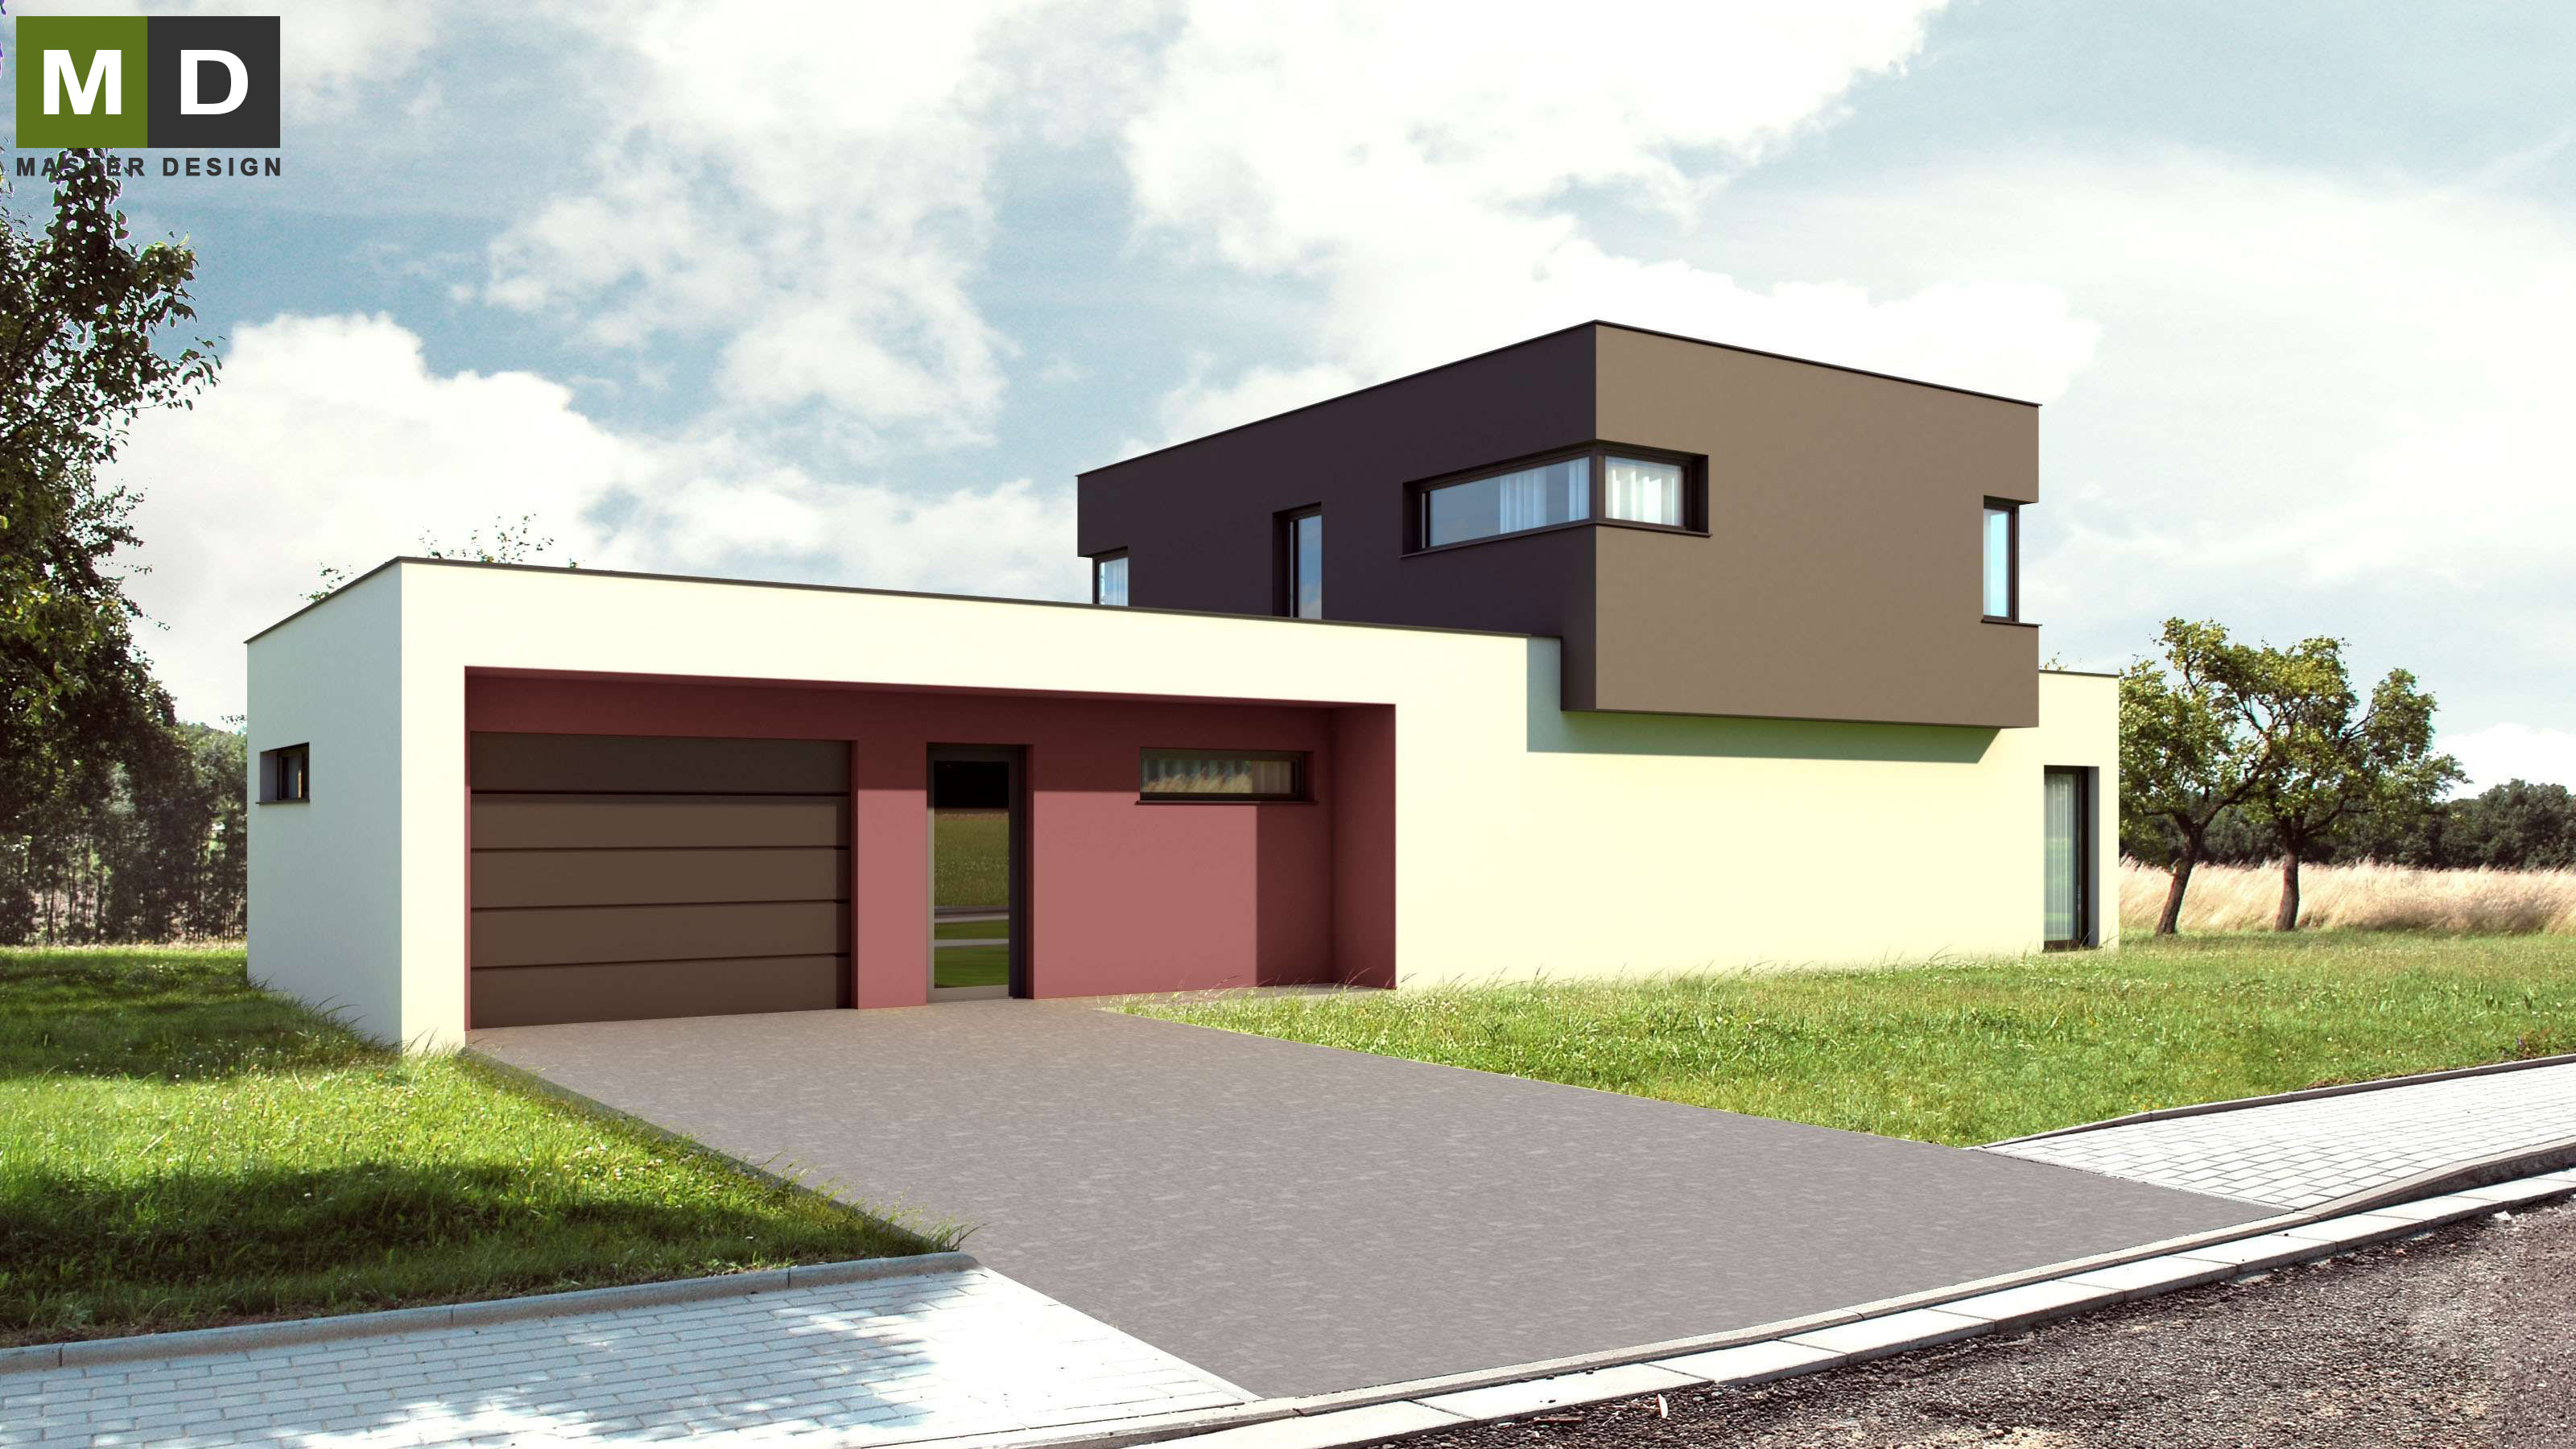 Vizualizace 1 - Dvoupatrová pasivní dřevostavba s plochou střechou - Developerský projekt do Švýcarska